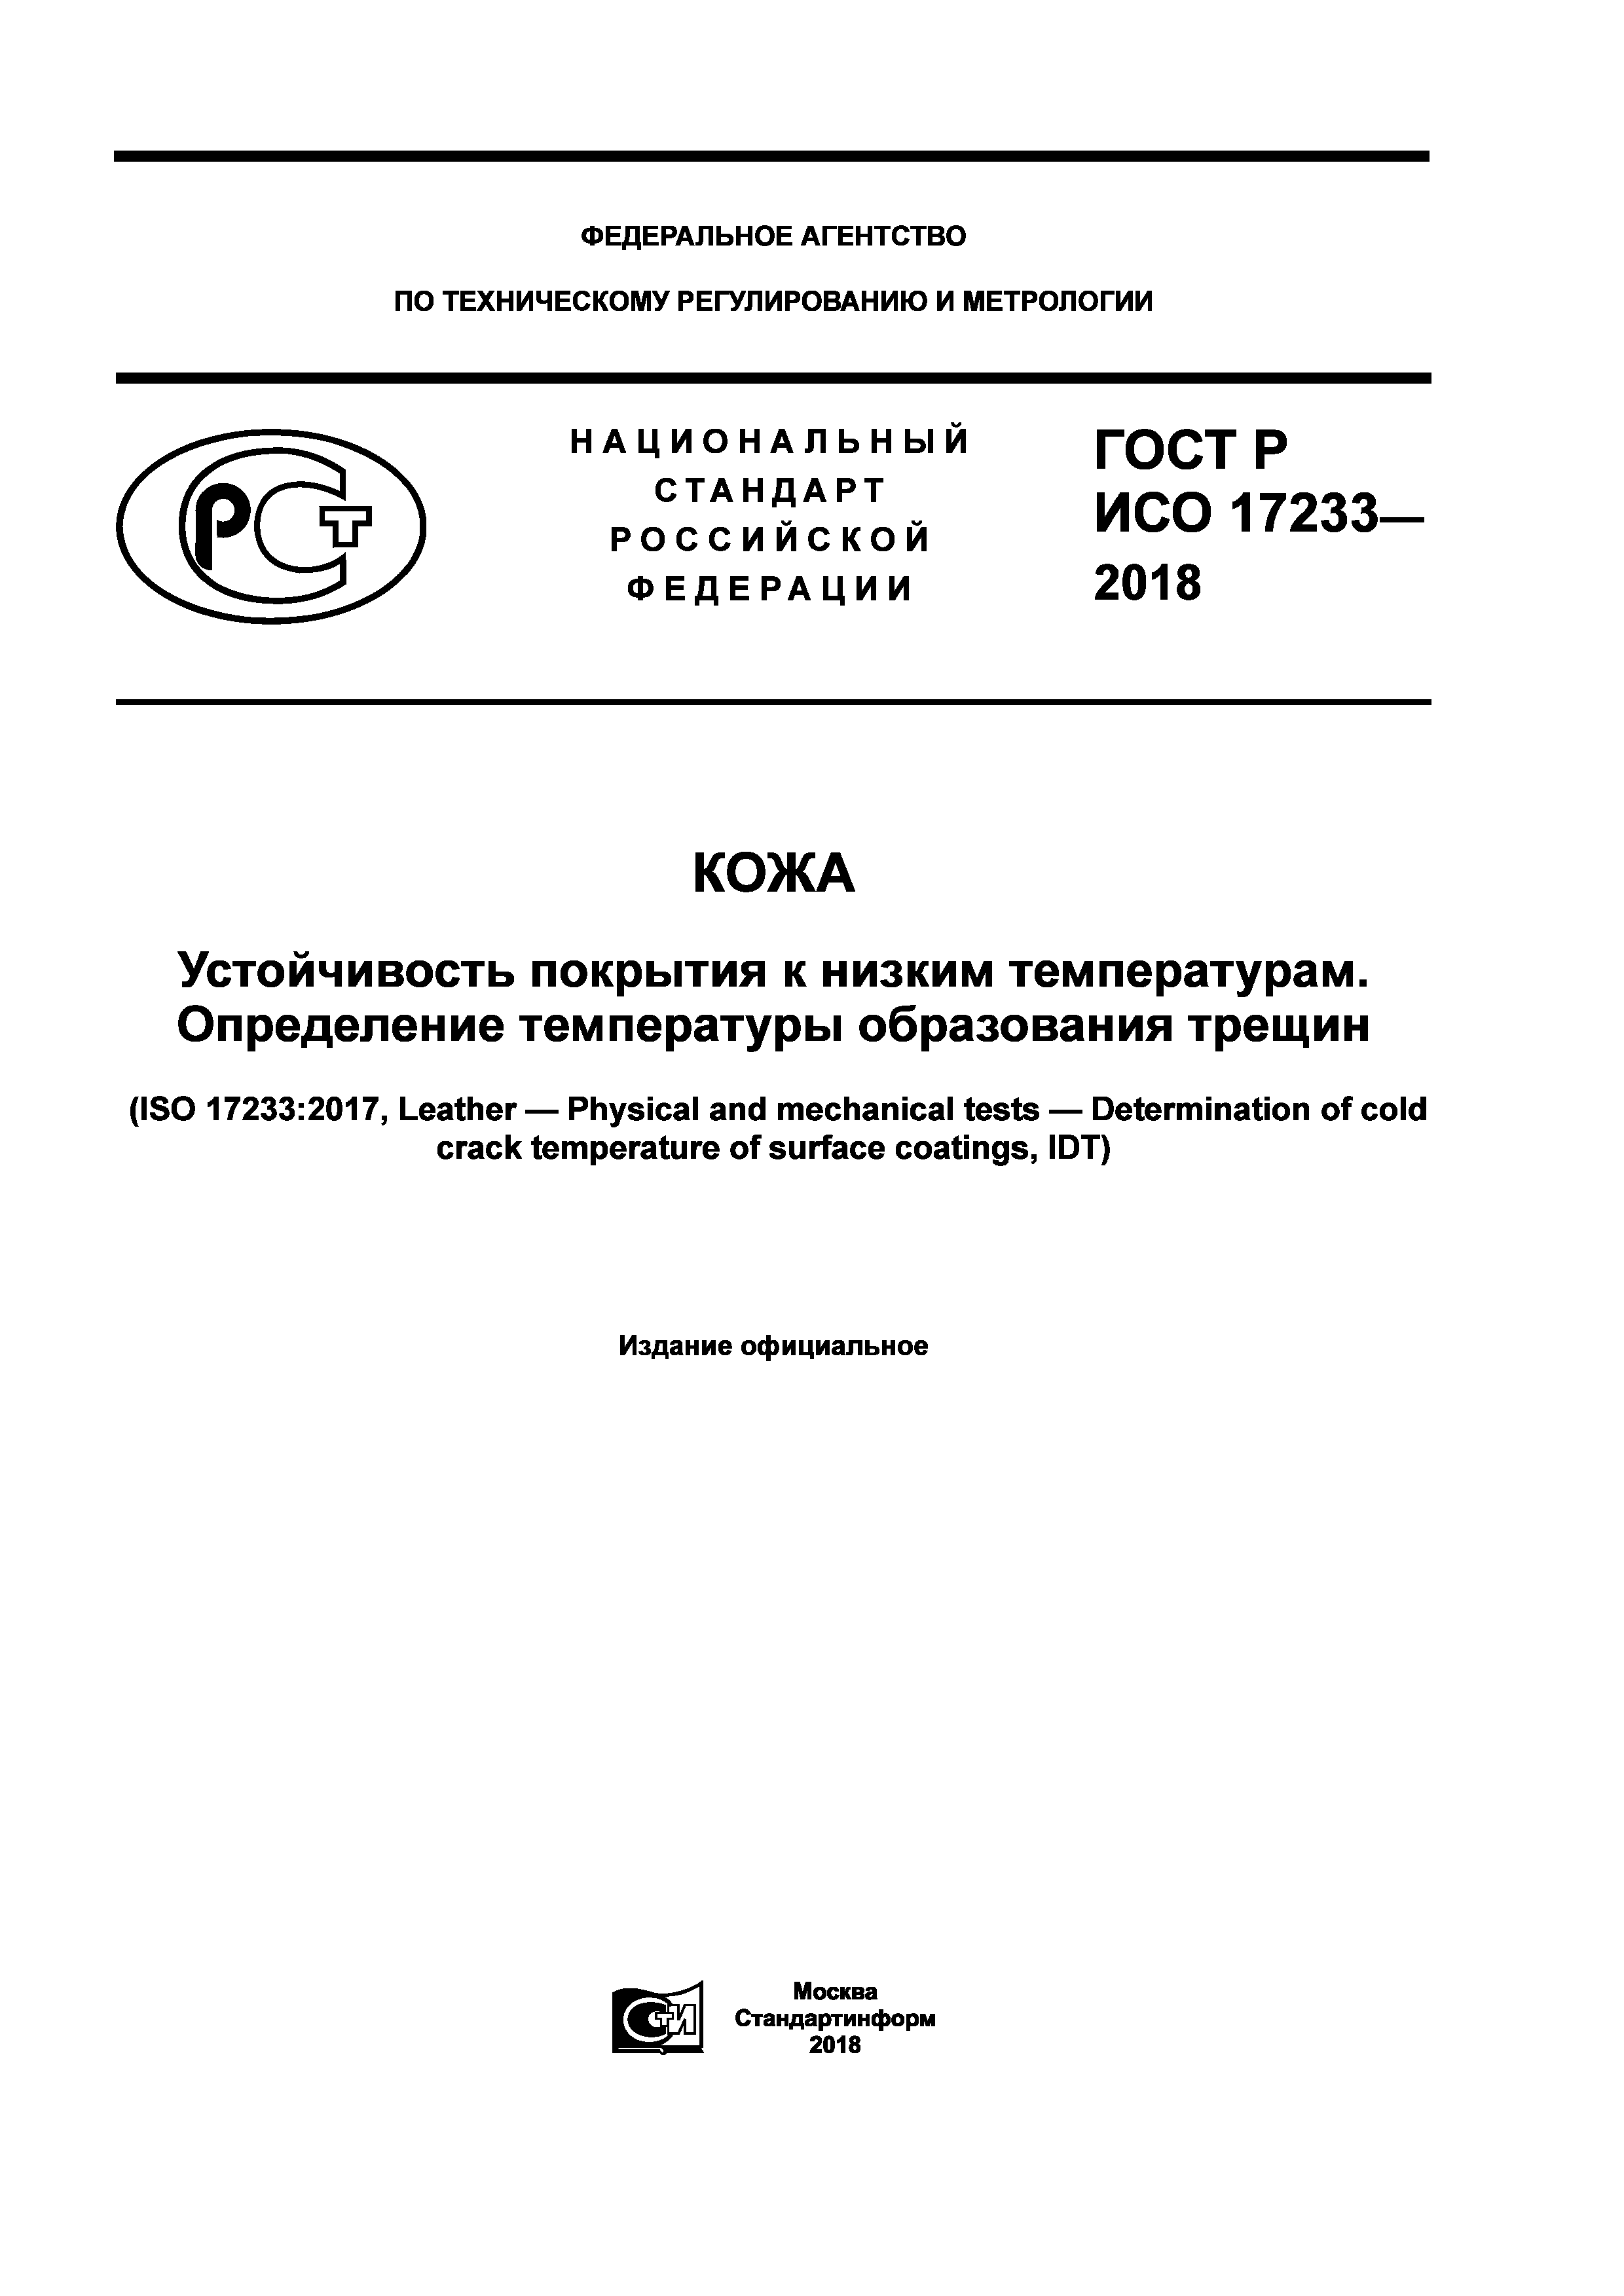 ГОСТ Р ИСО 17233-2018